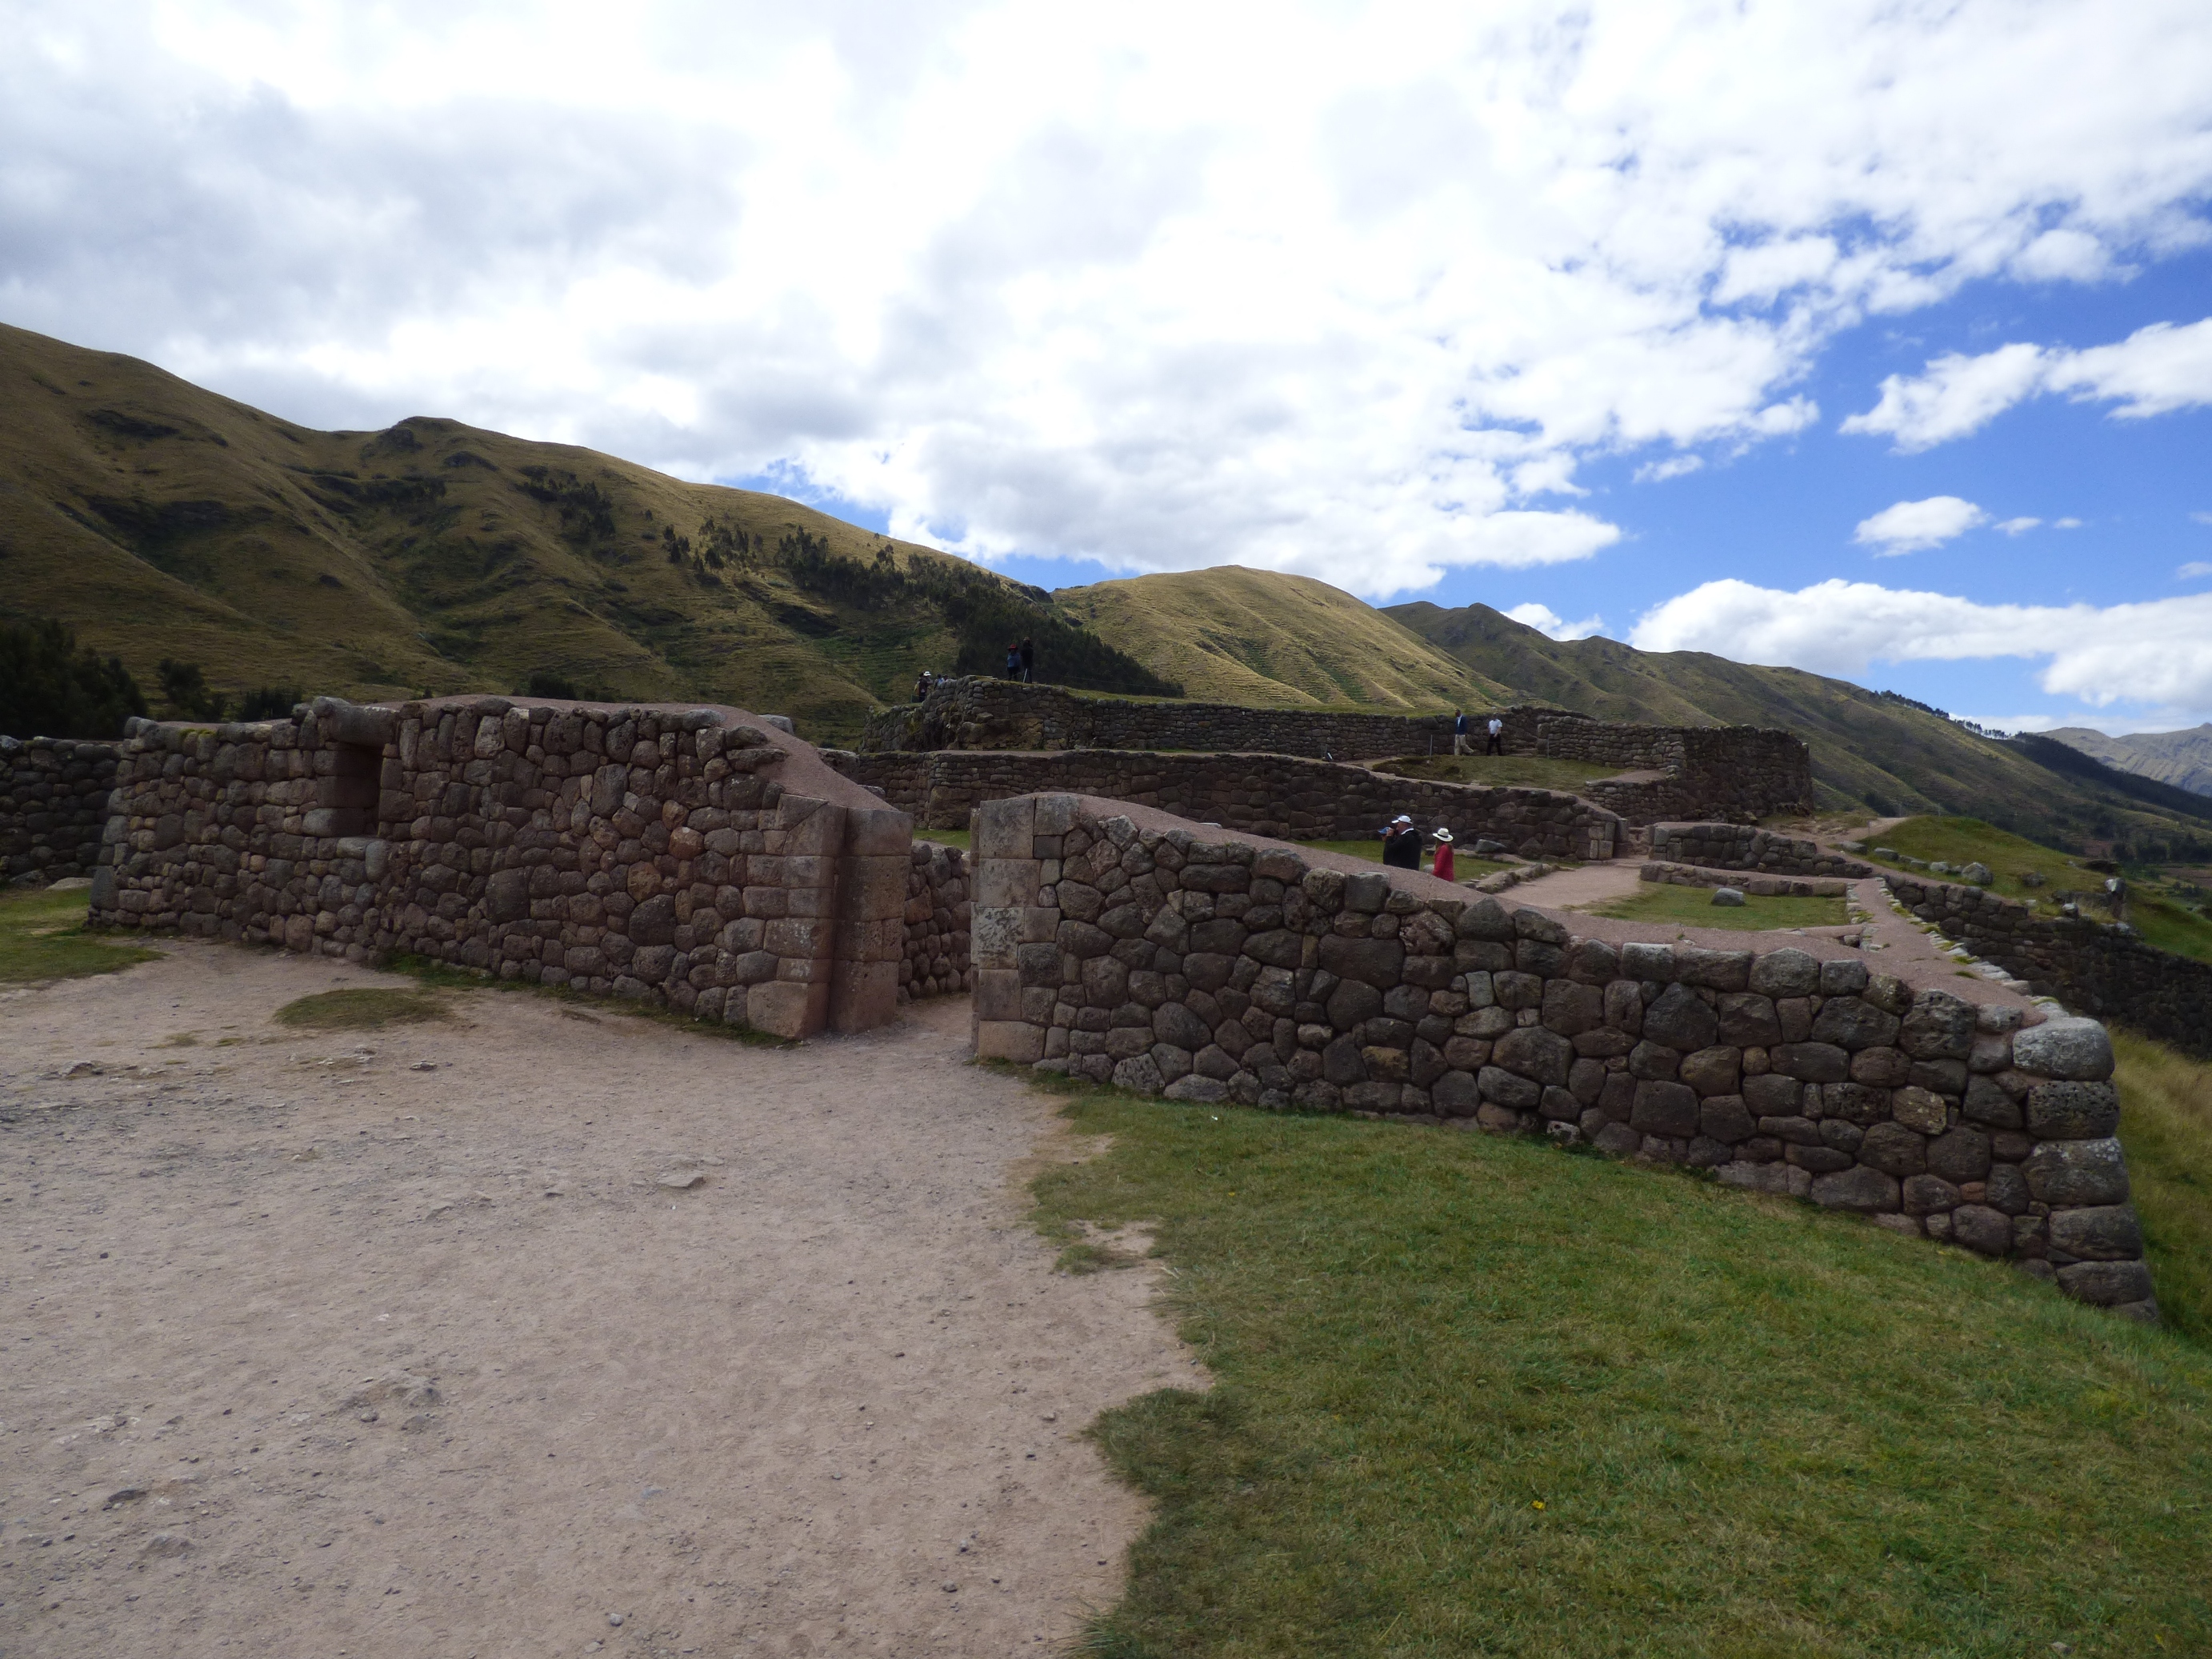 Puca-Pucara az inka erőd a vörös tégláiról kapta a nevét.